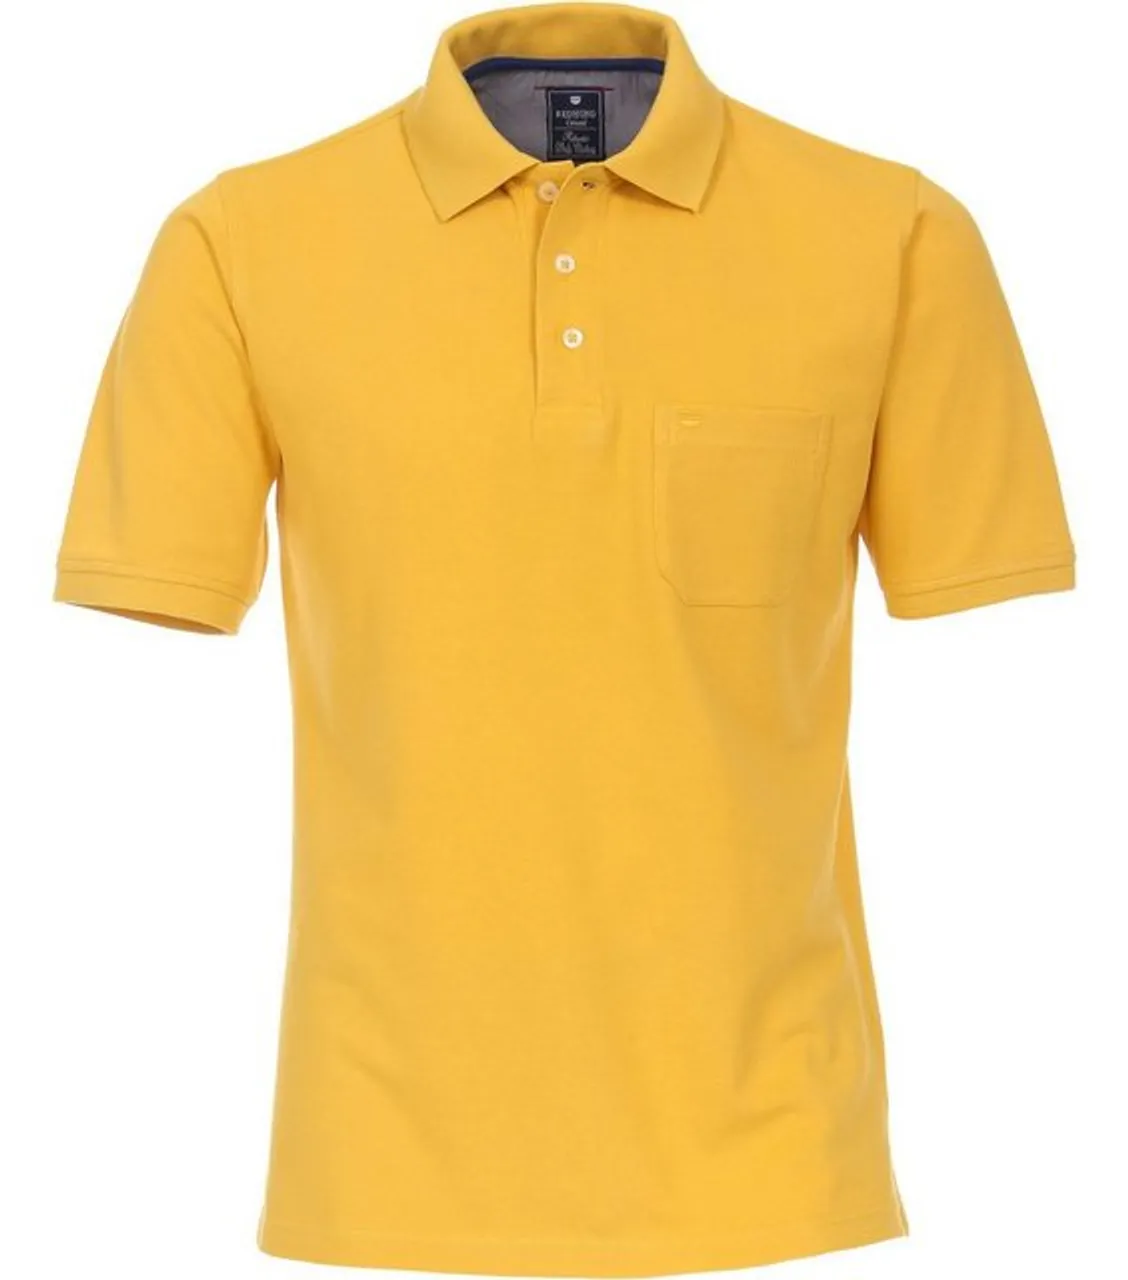 Redmond Poloshirt Piqué Polo-Shirt